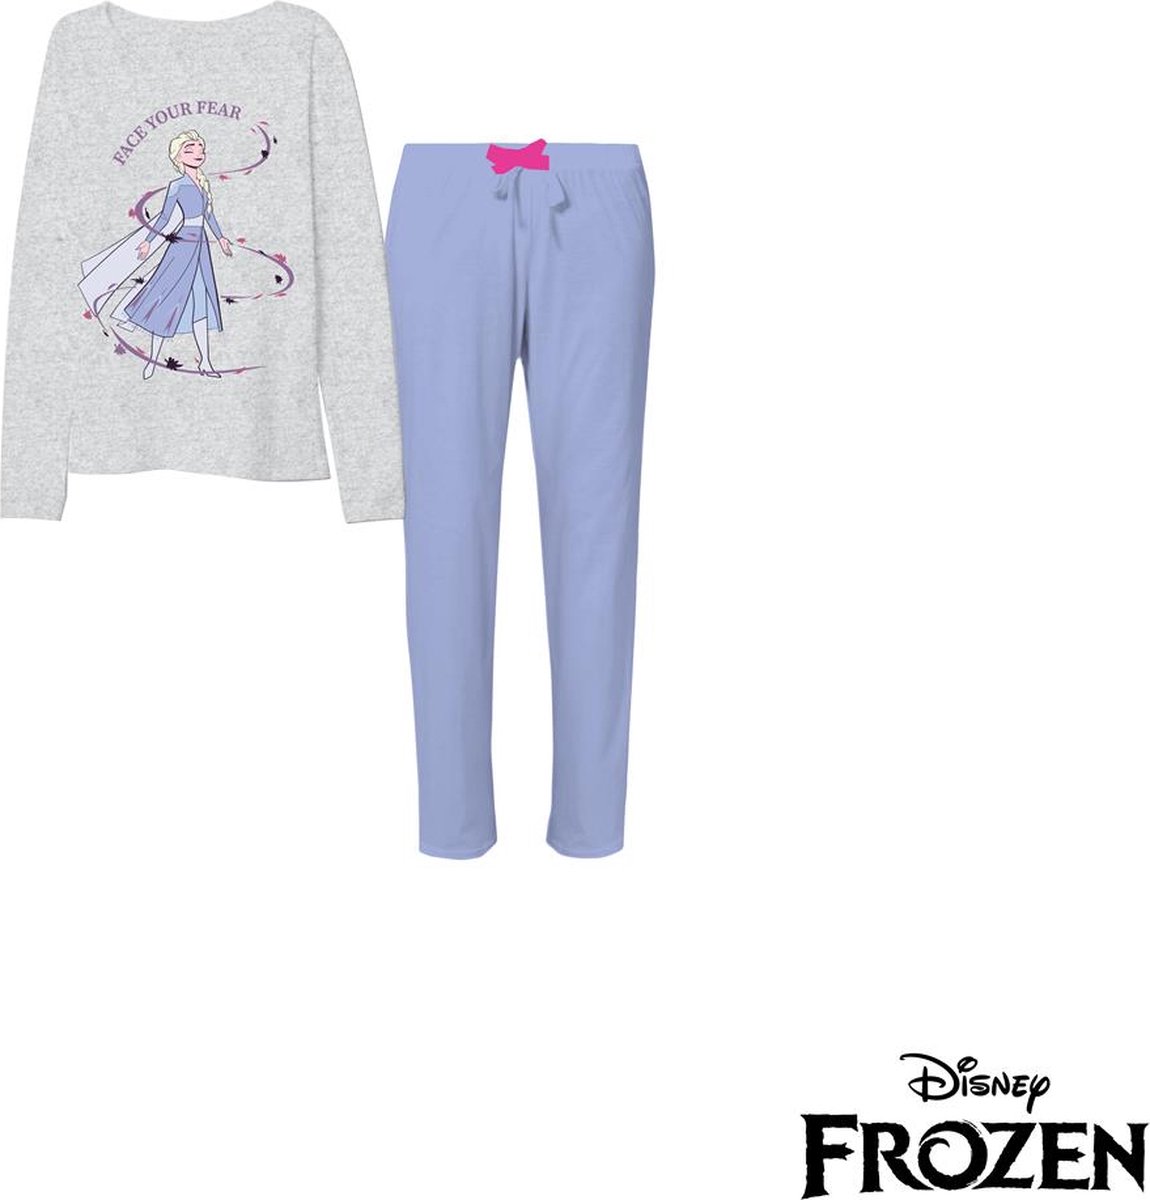 Disney Frozen - Pyjama Disney Frozen - Meisjes - maat 98/104